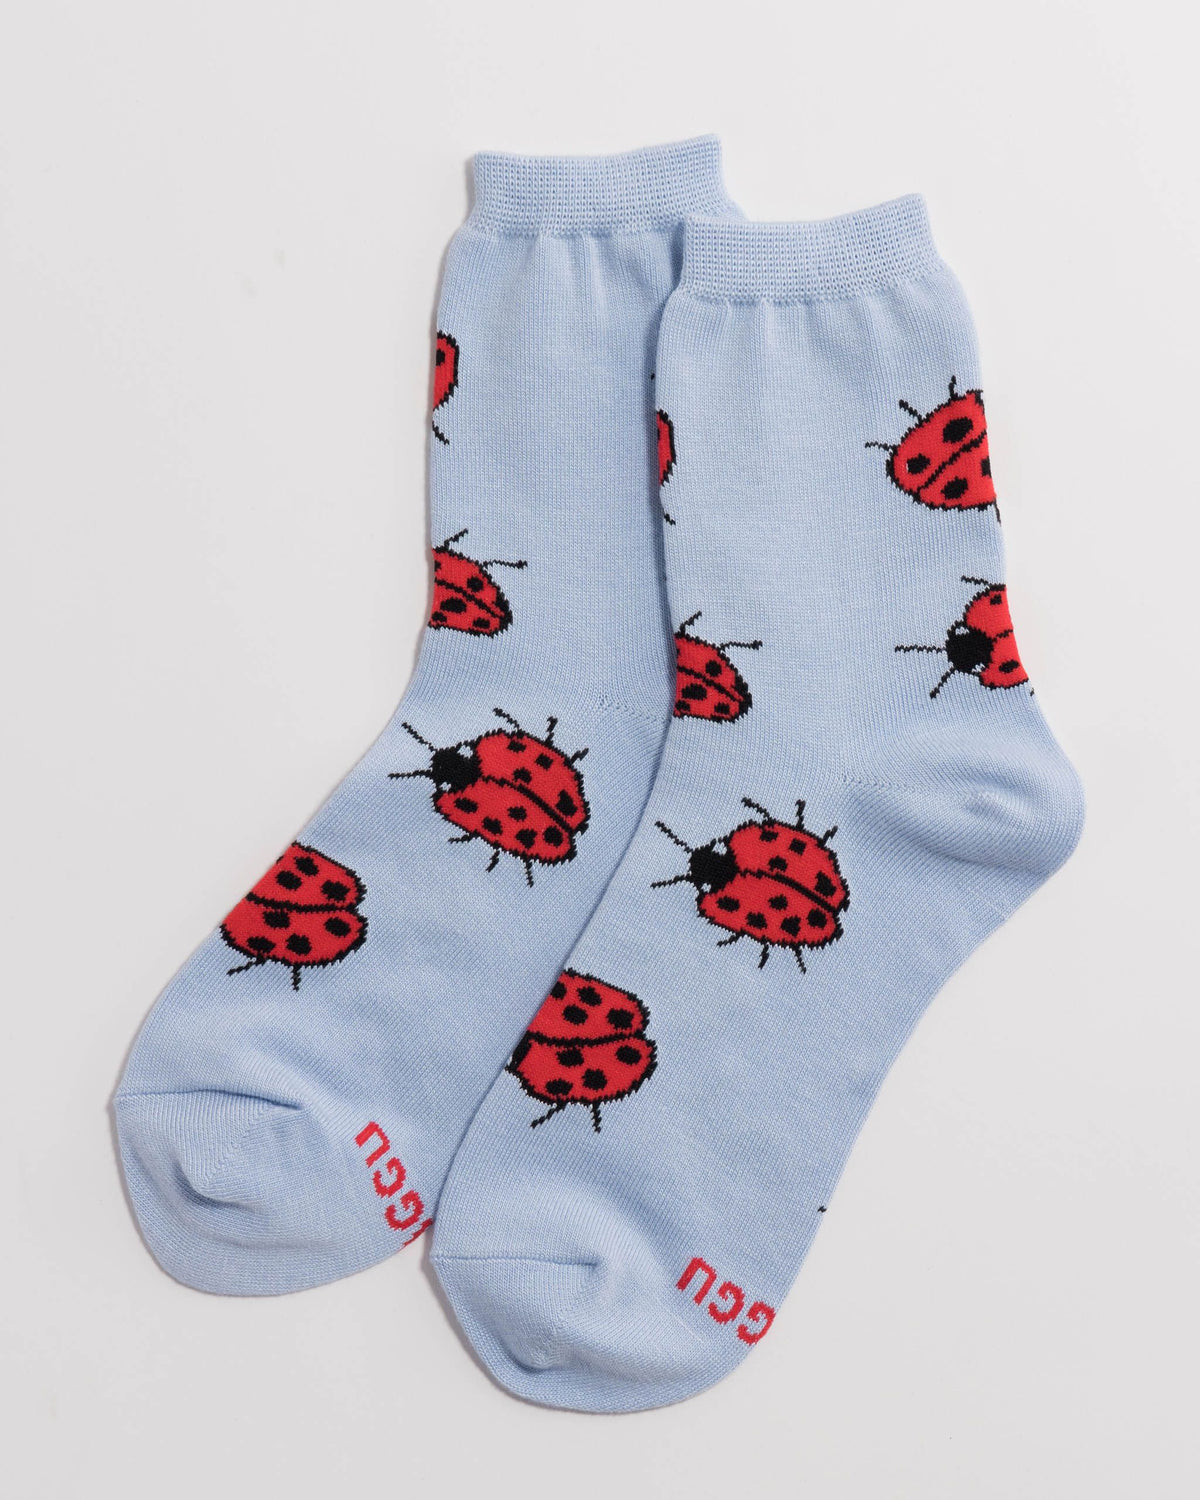 Crew Sock - Ladybug